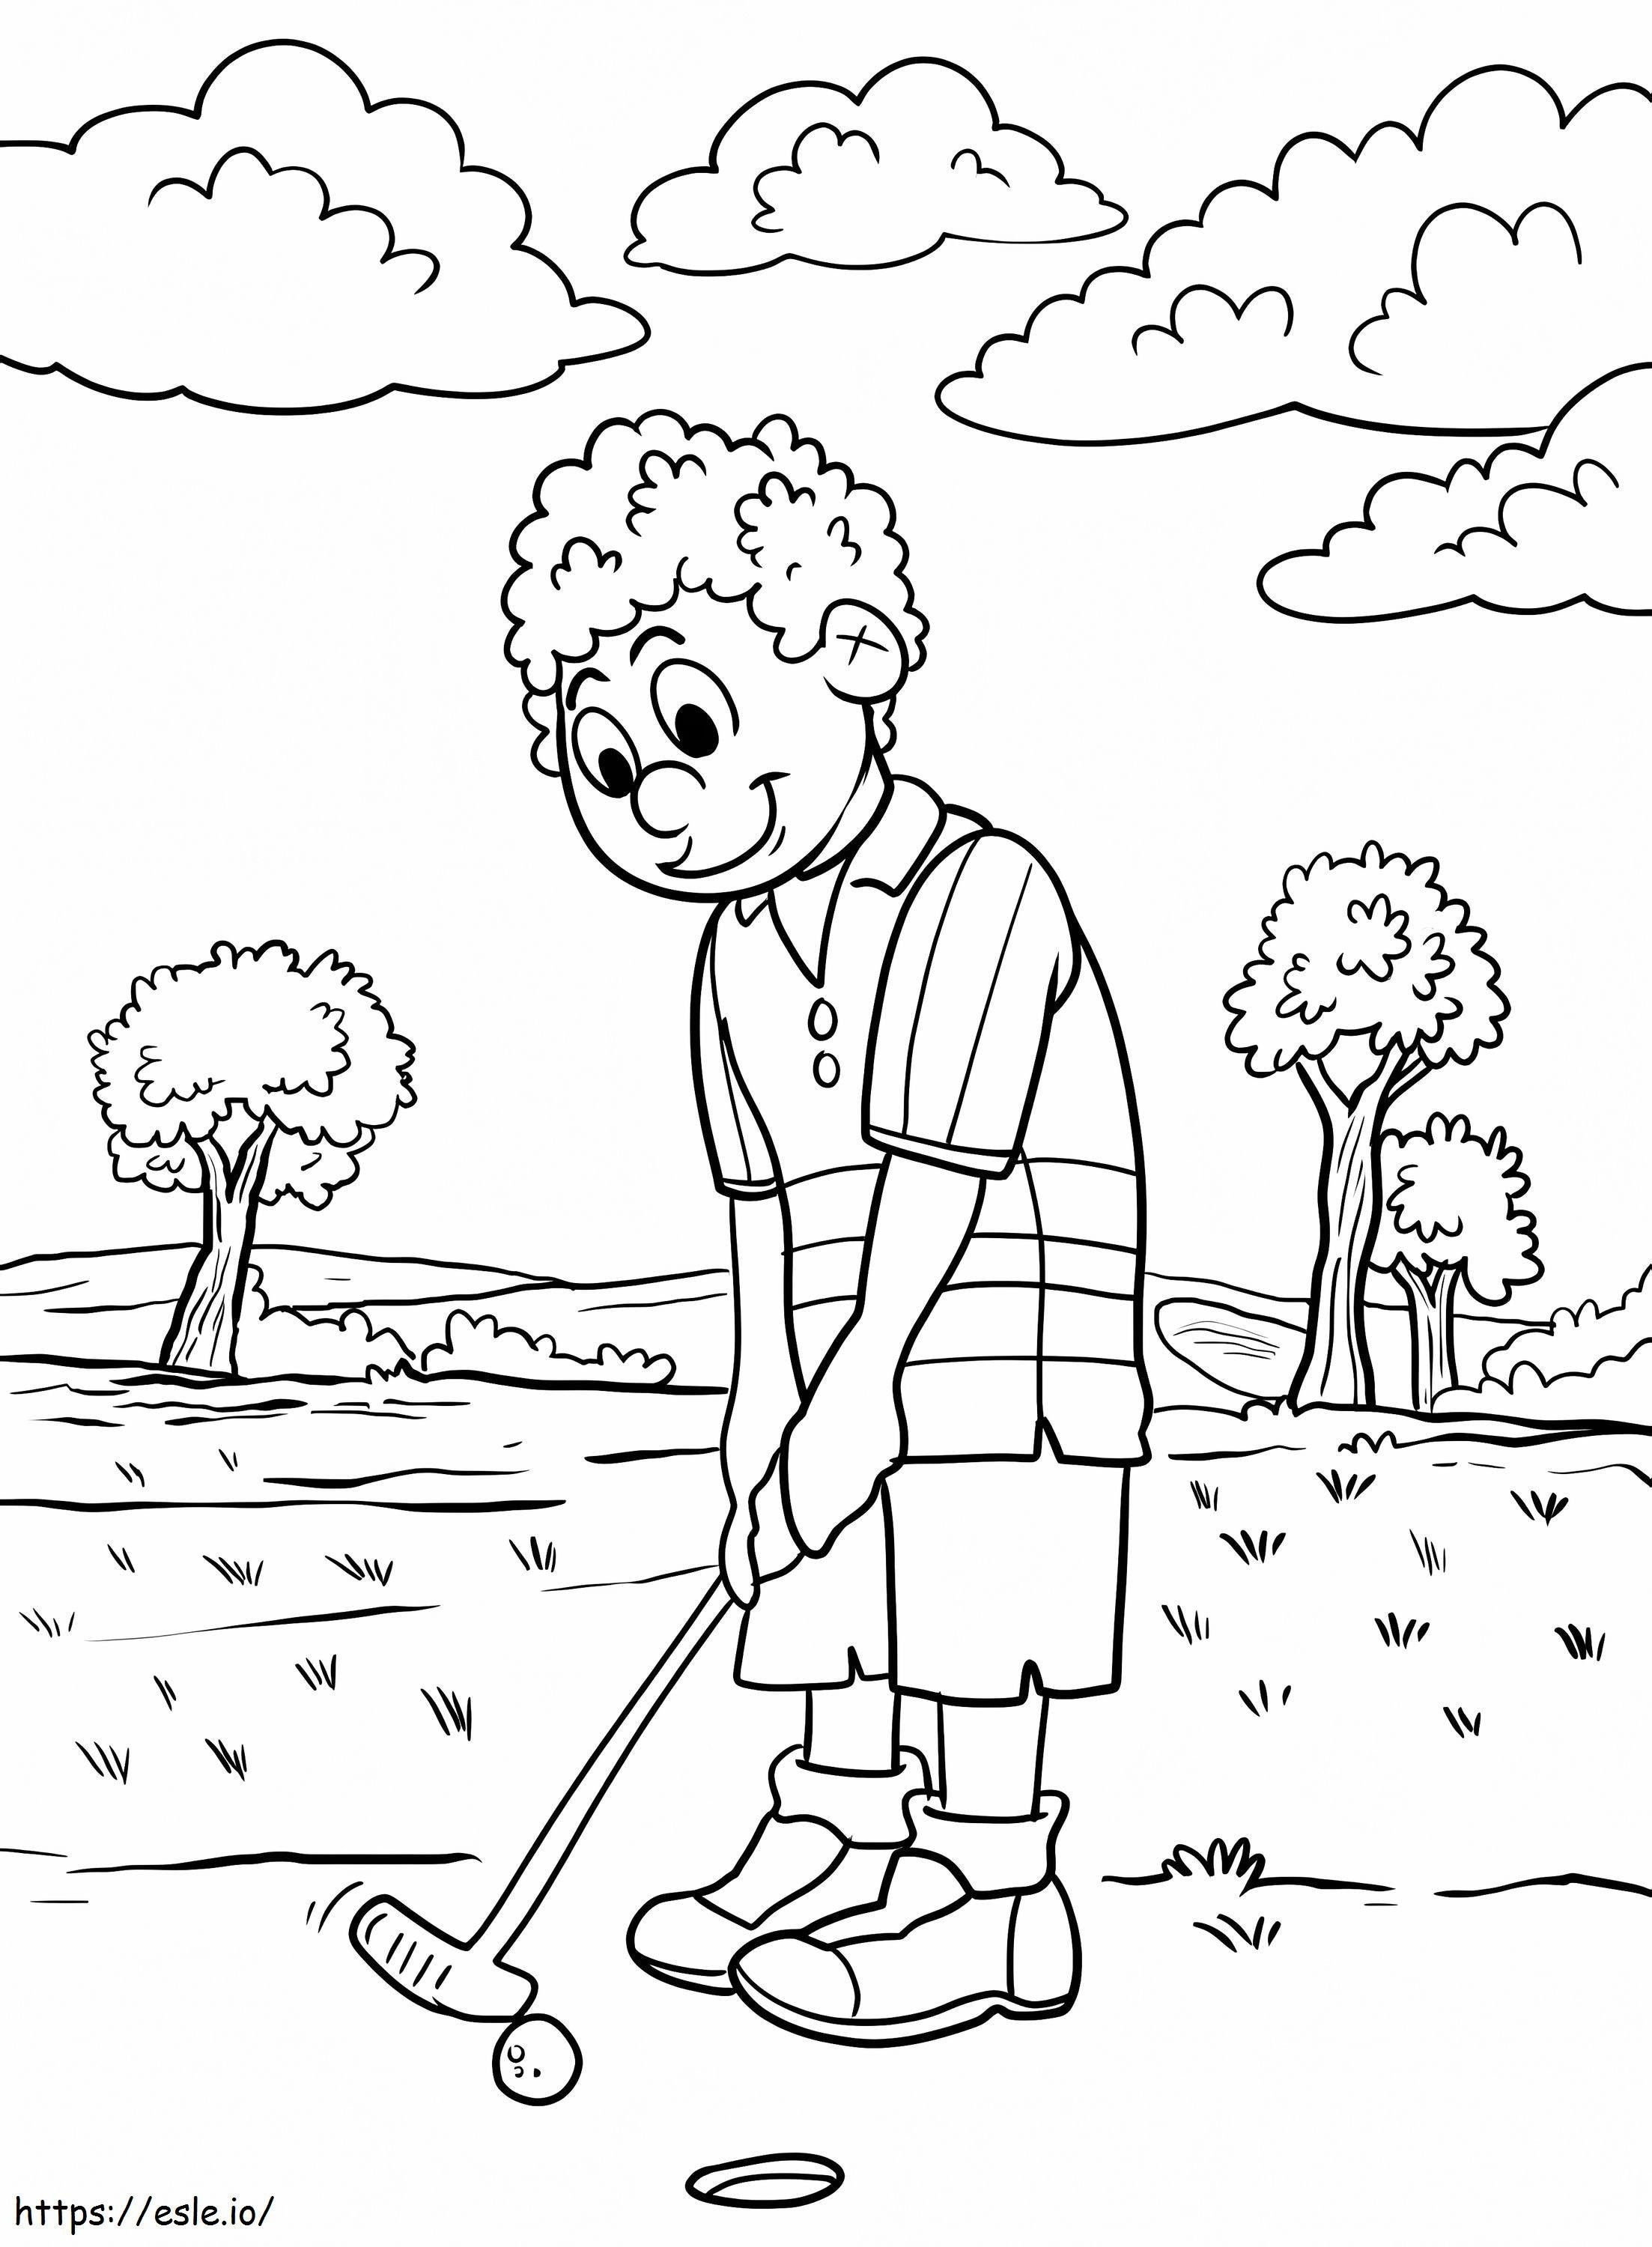 Um cara jogando golfe para colorir